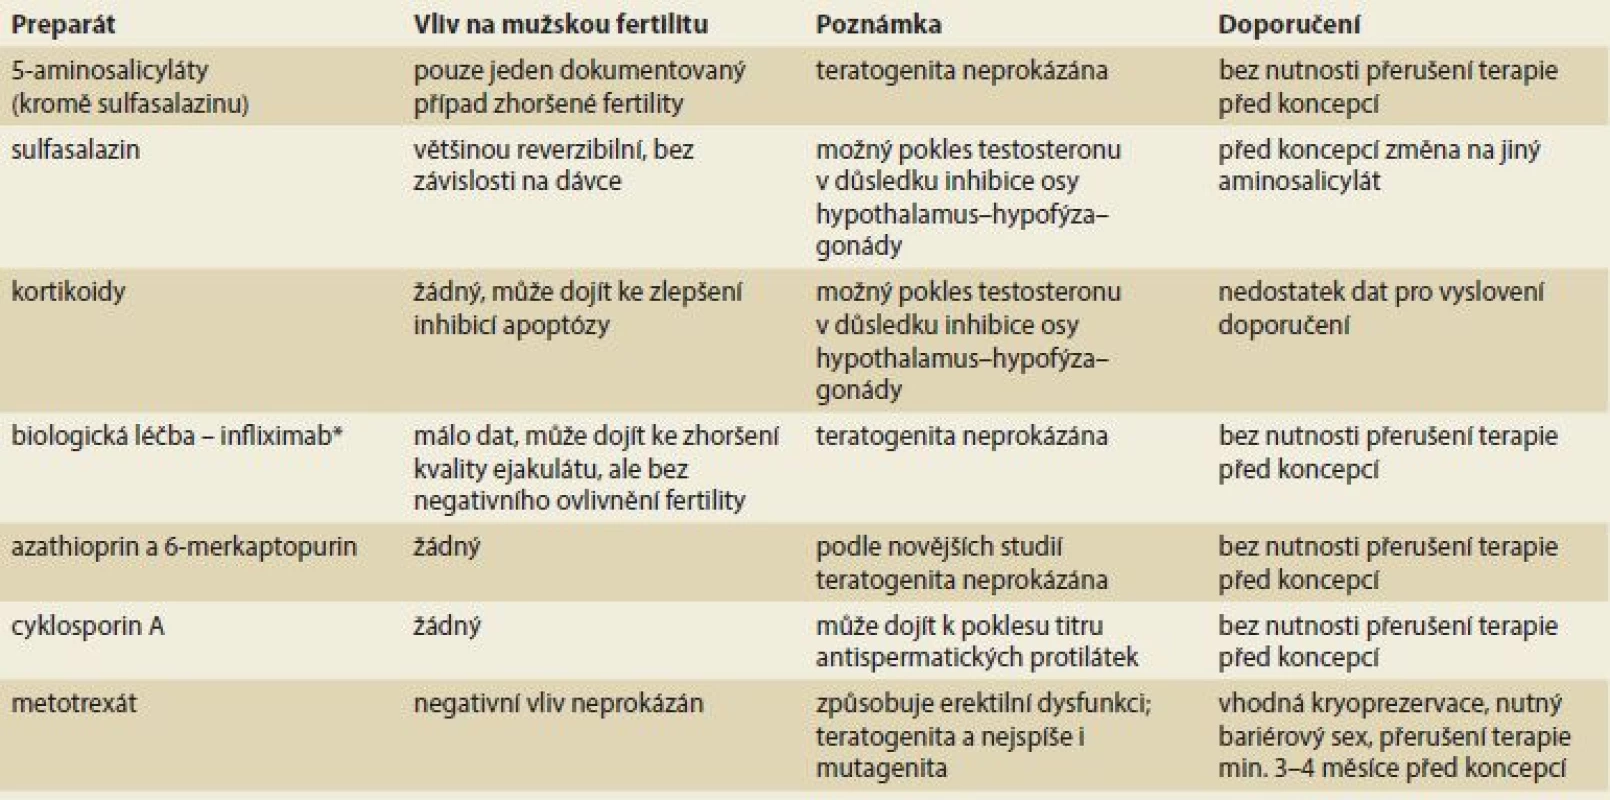 Přehled léků používaných v léčbě idiopatických střevních zánětů a jejich vliv na mužskou plodnost – dle Palomba et al [1].<br>
Tab. 1. Overview of drugs used in idiopathic bowel disease treatment and their impact on male fertility – according to Palomba et al. [1].